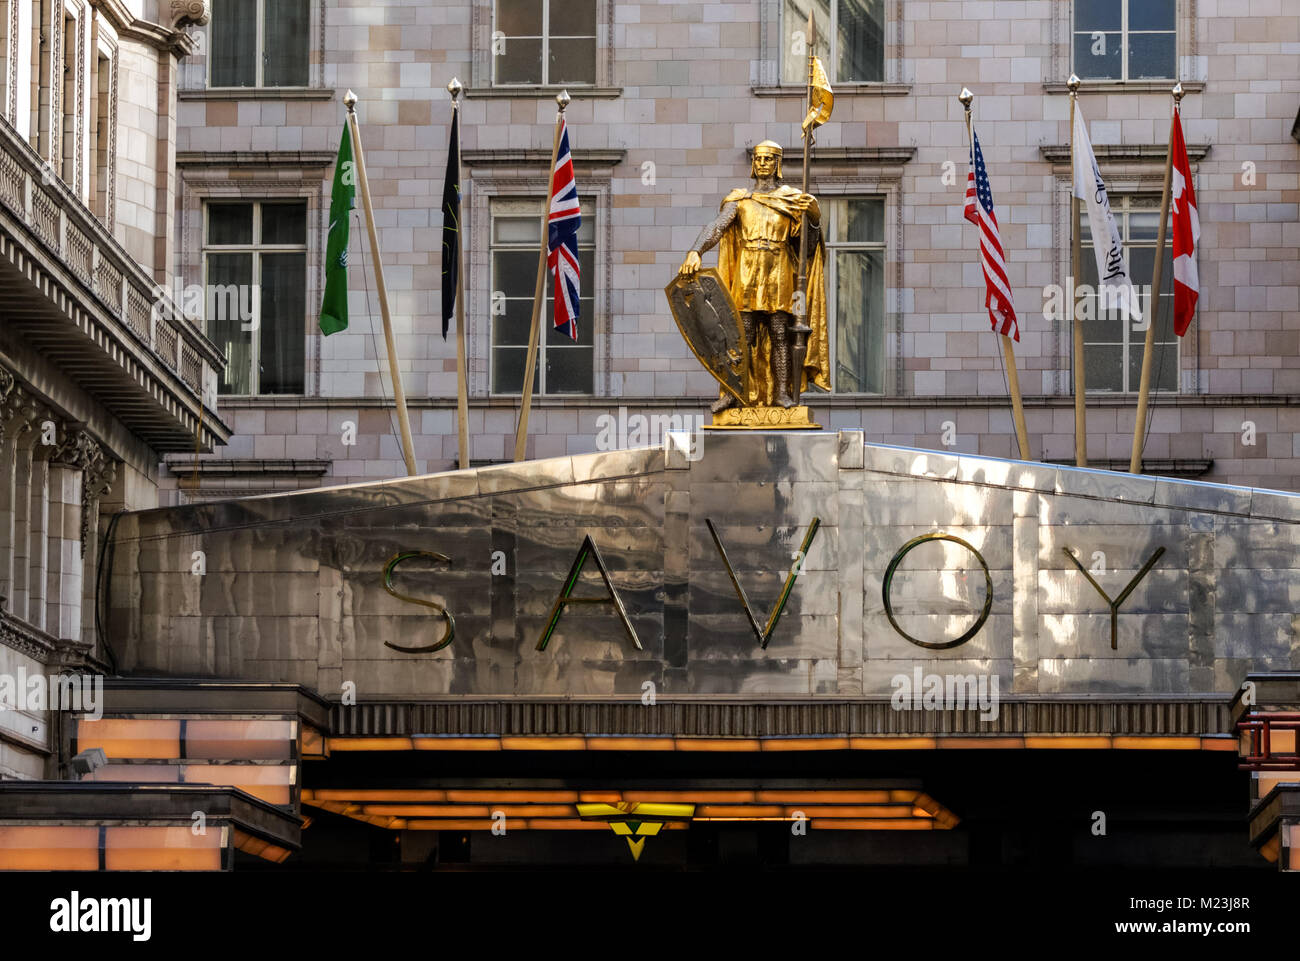 Savoy Hotel on Strand, exterior, entrance, London England United Kingdom UK Stock Photo